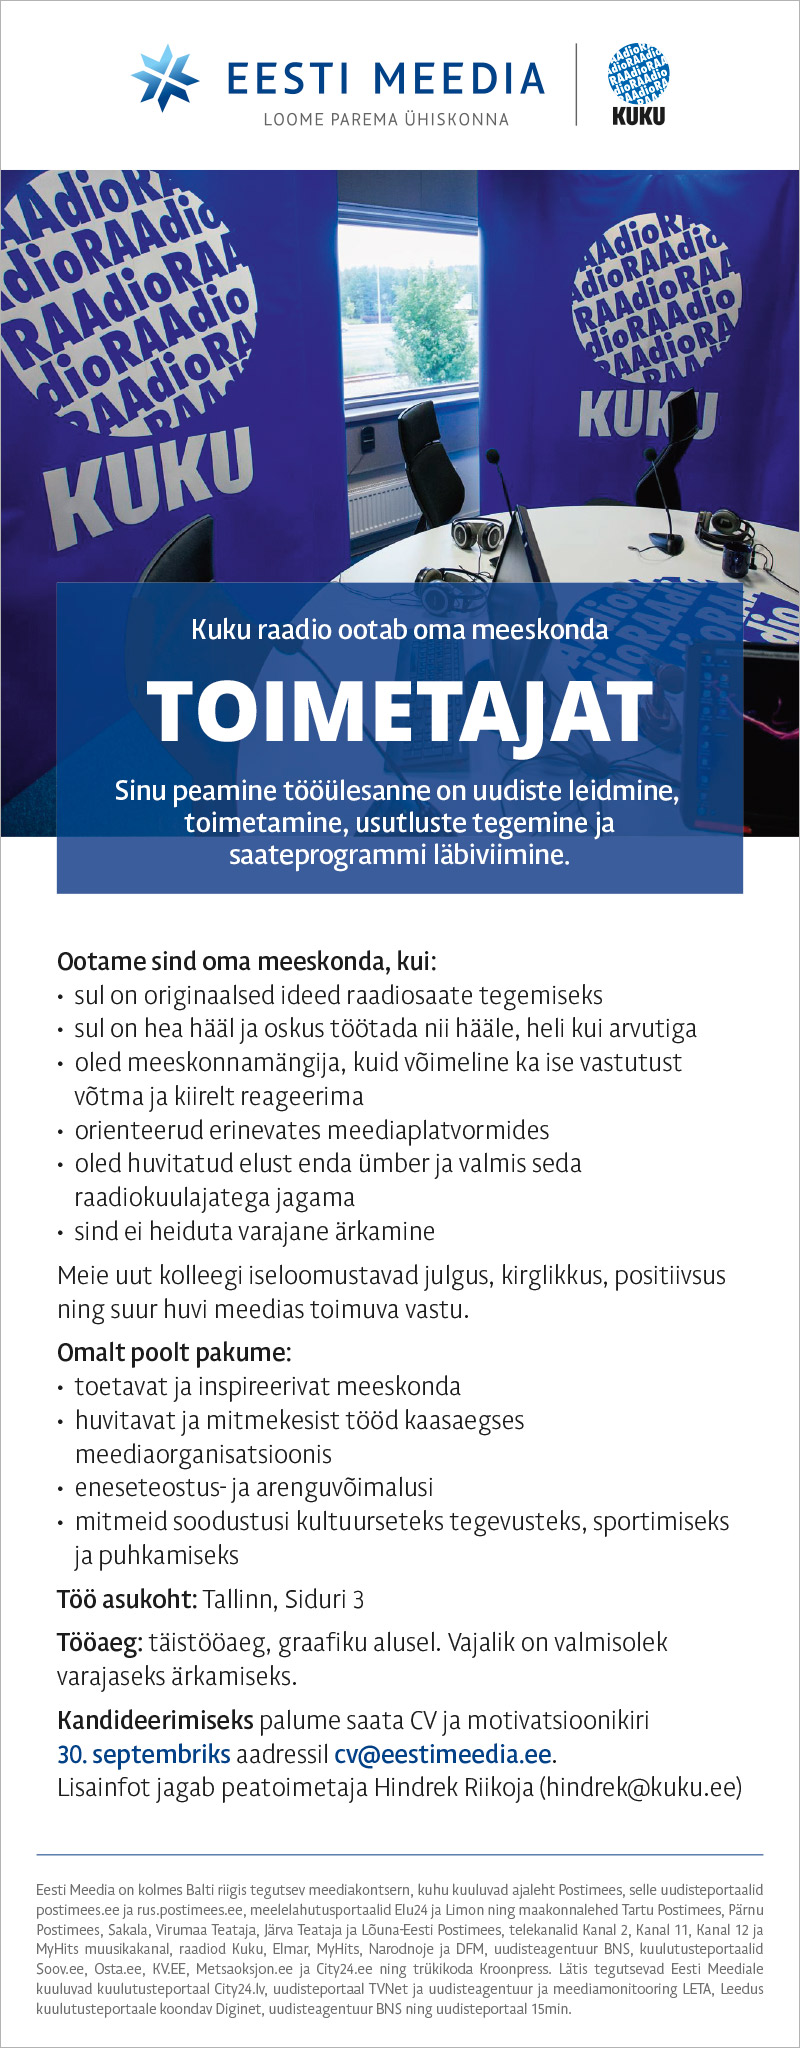 Eesti Meedia Kuku raadio toimetaja